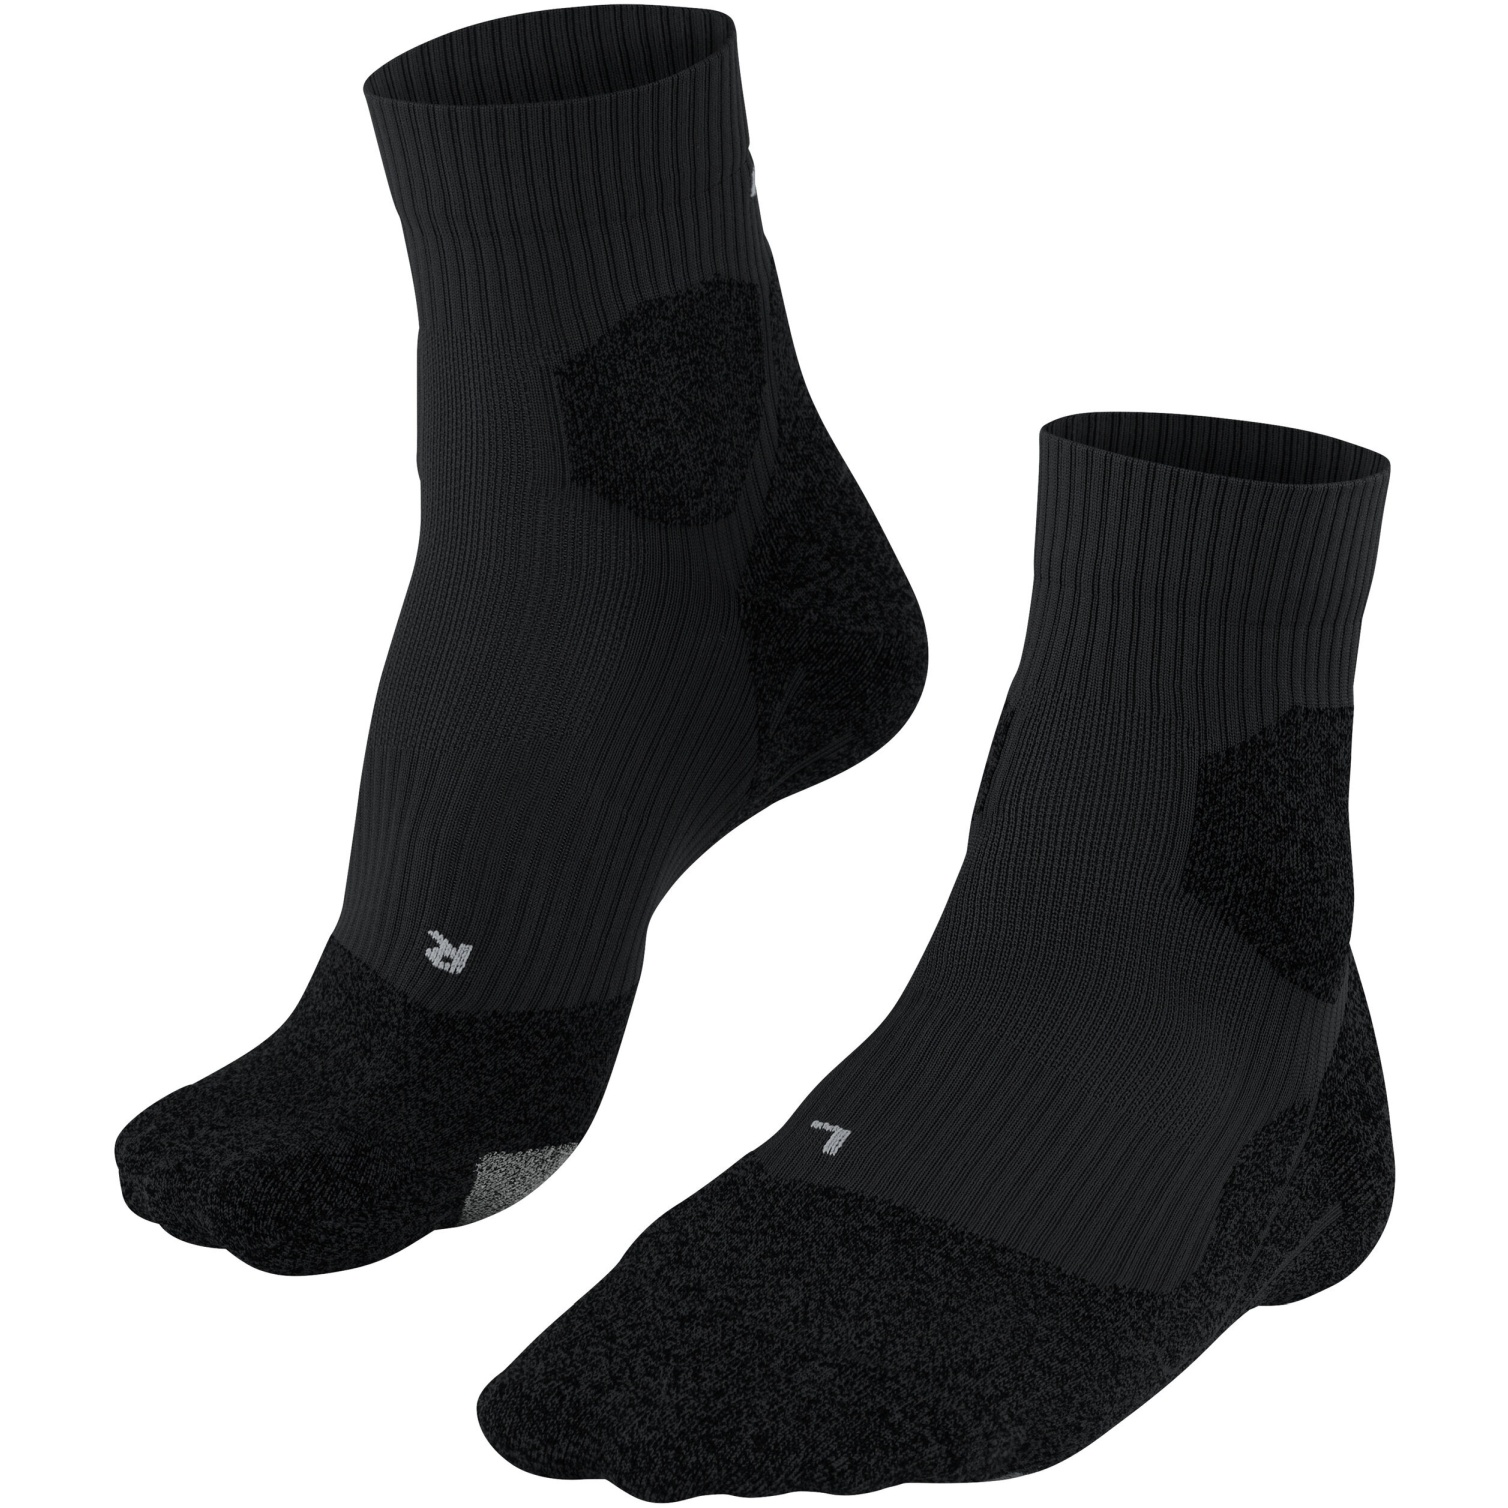 Produktbild von Falke RU Trail Grip Socken Damen - schwarz 3000